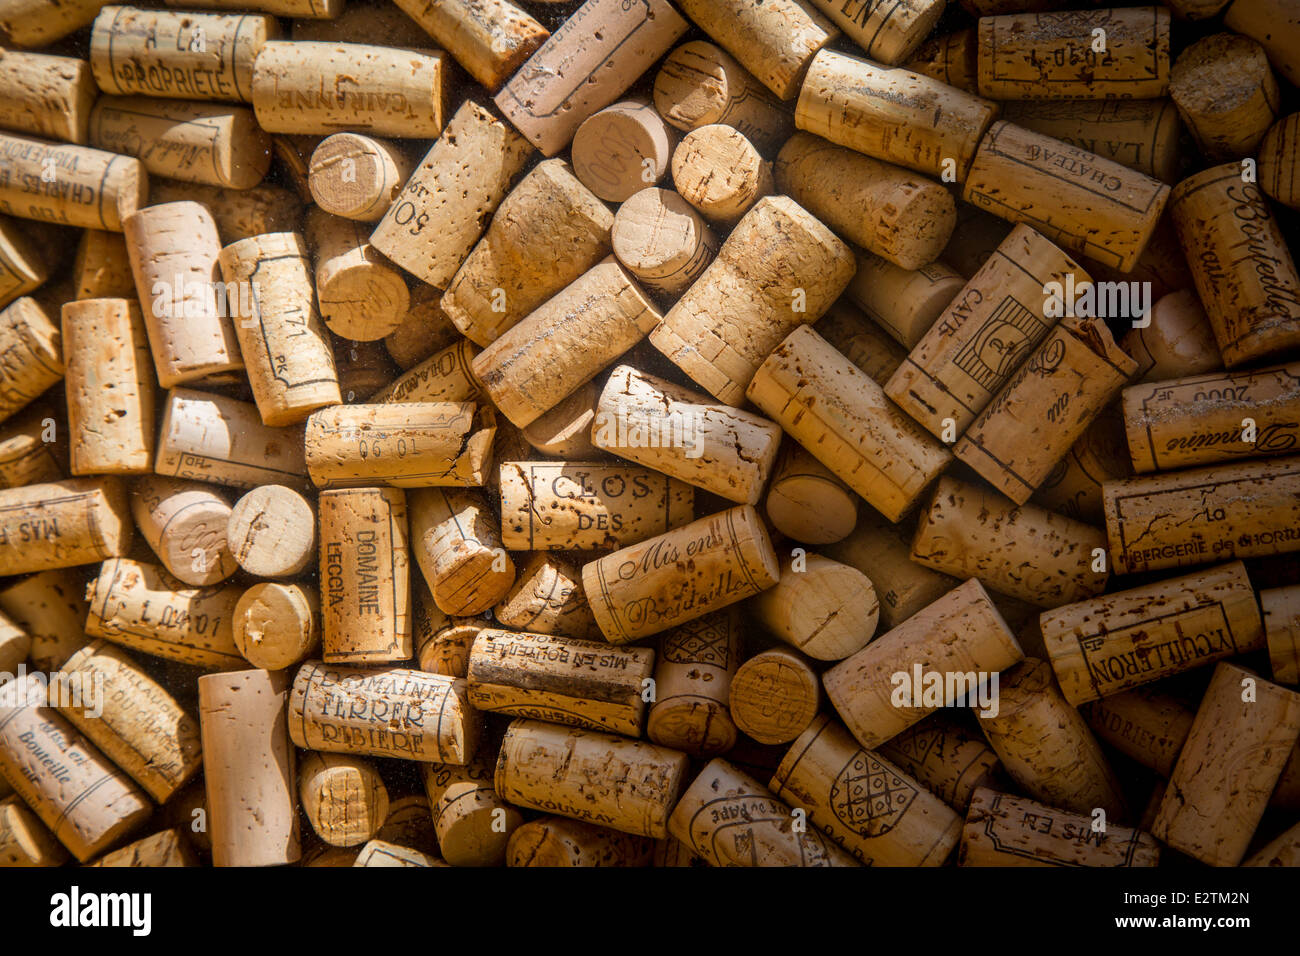 Utilizzate la bottiglia di vino tappi sul display a Saint Germain des Pres, Parigi Francia Foto Stock